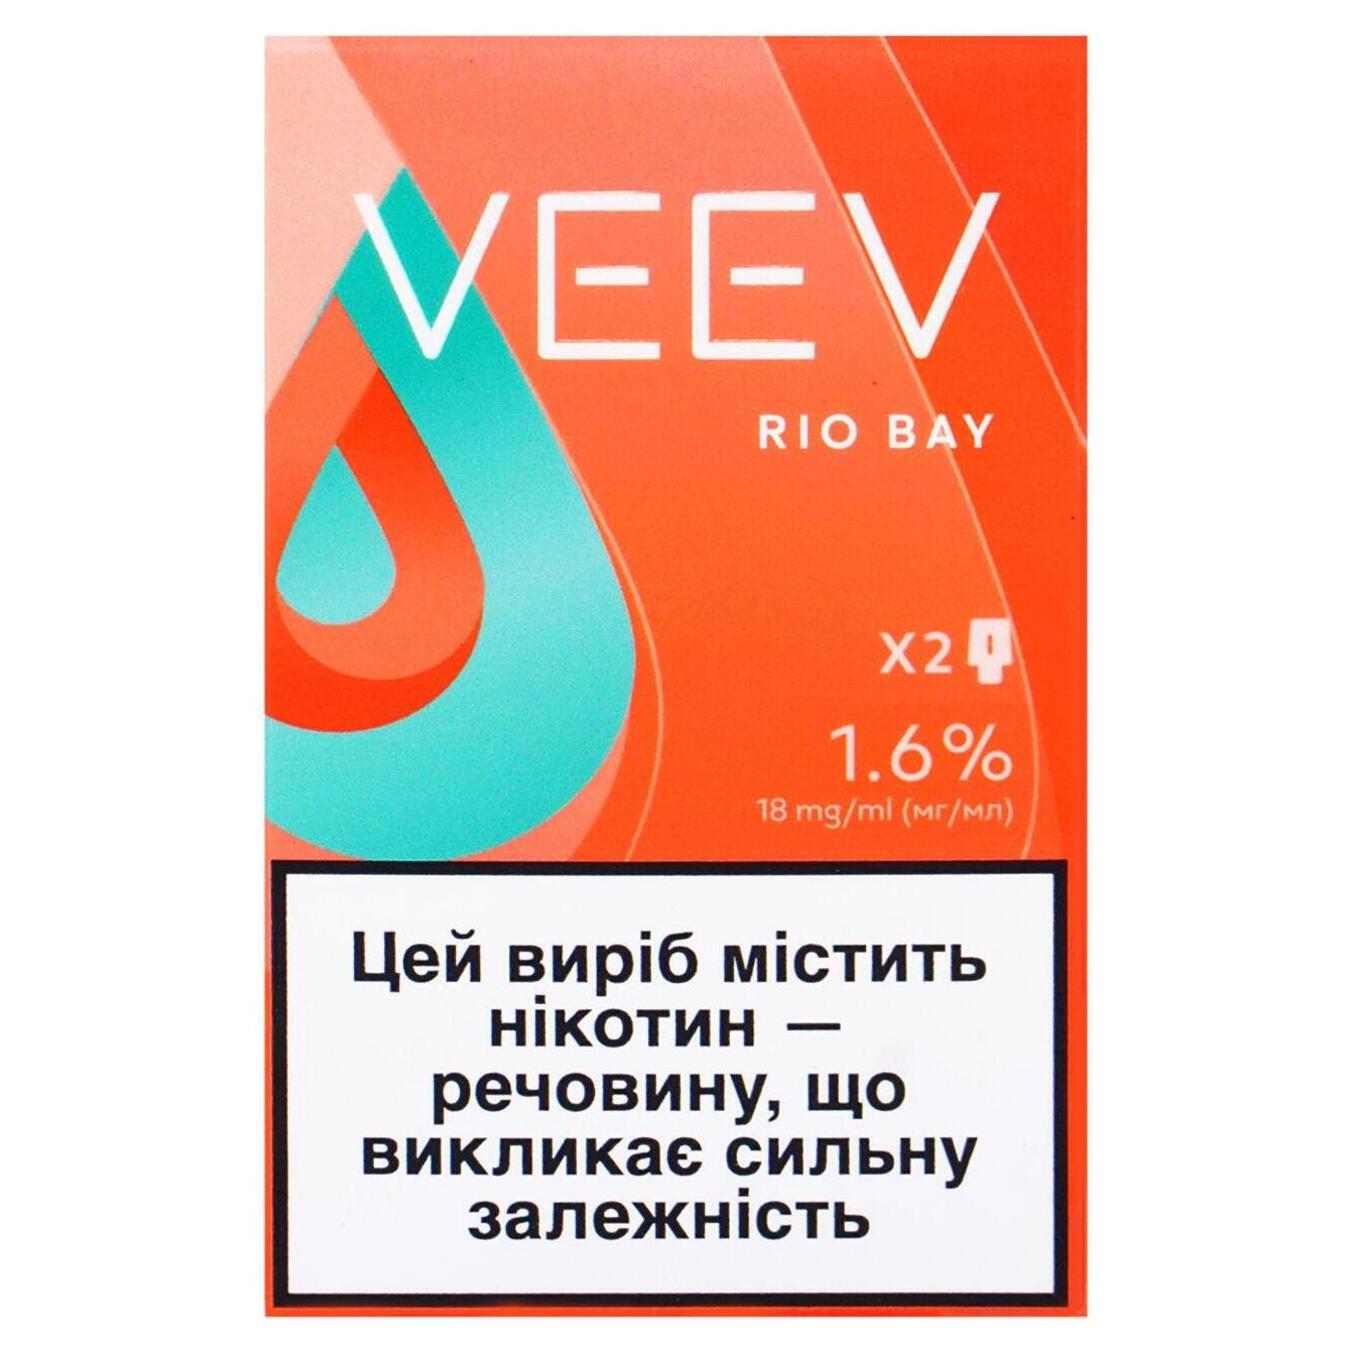 Картридж VEEV Rio Bay 1,6% (ціна вказана без акцизу)